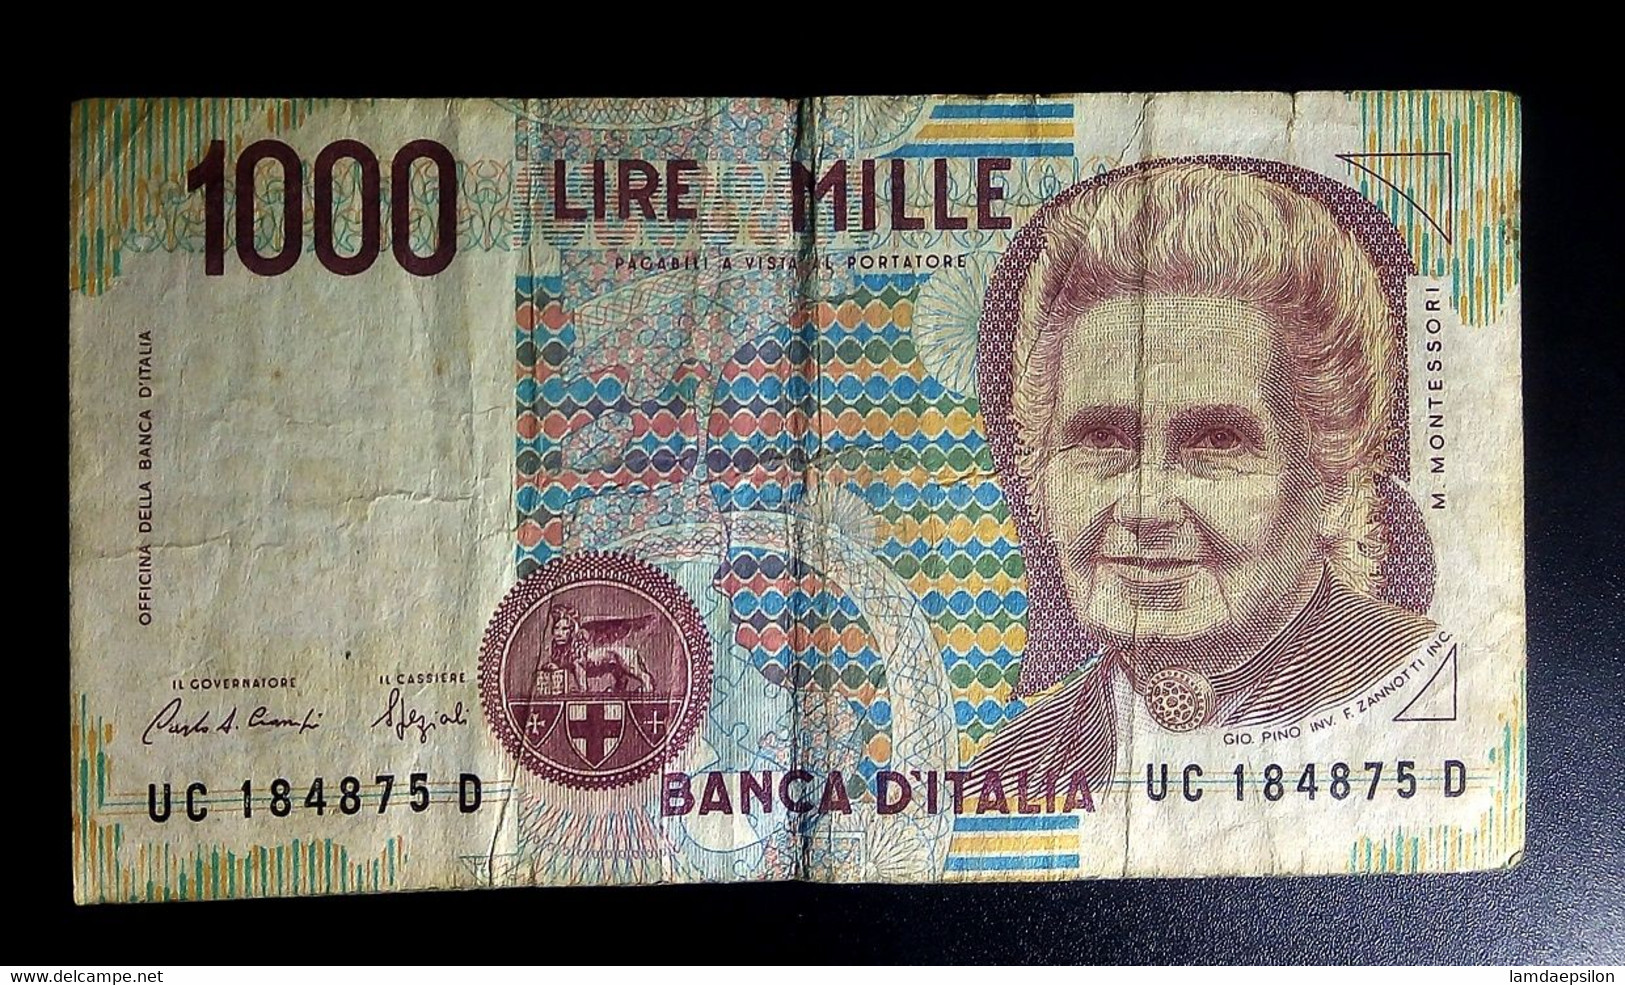 A7  ITALIE   BILLETS DU MONDE   ITALIA  BANKNOTES  1000  LIRE 1990 - [ 9] Colecciones